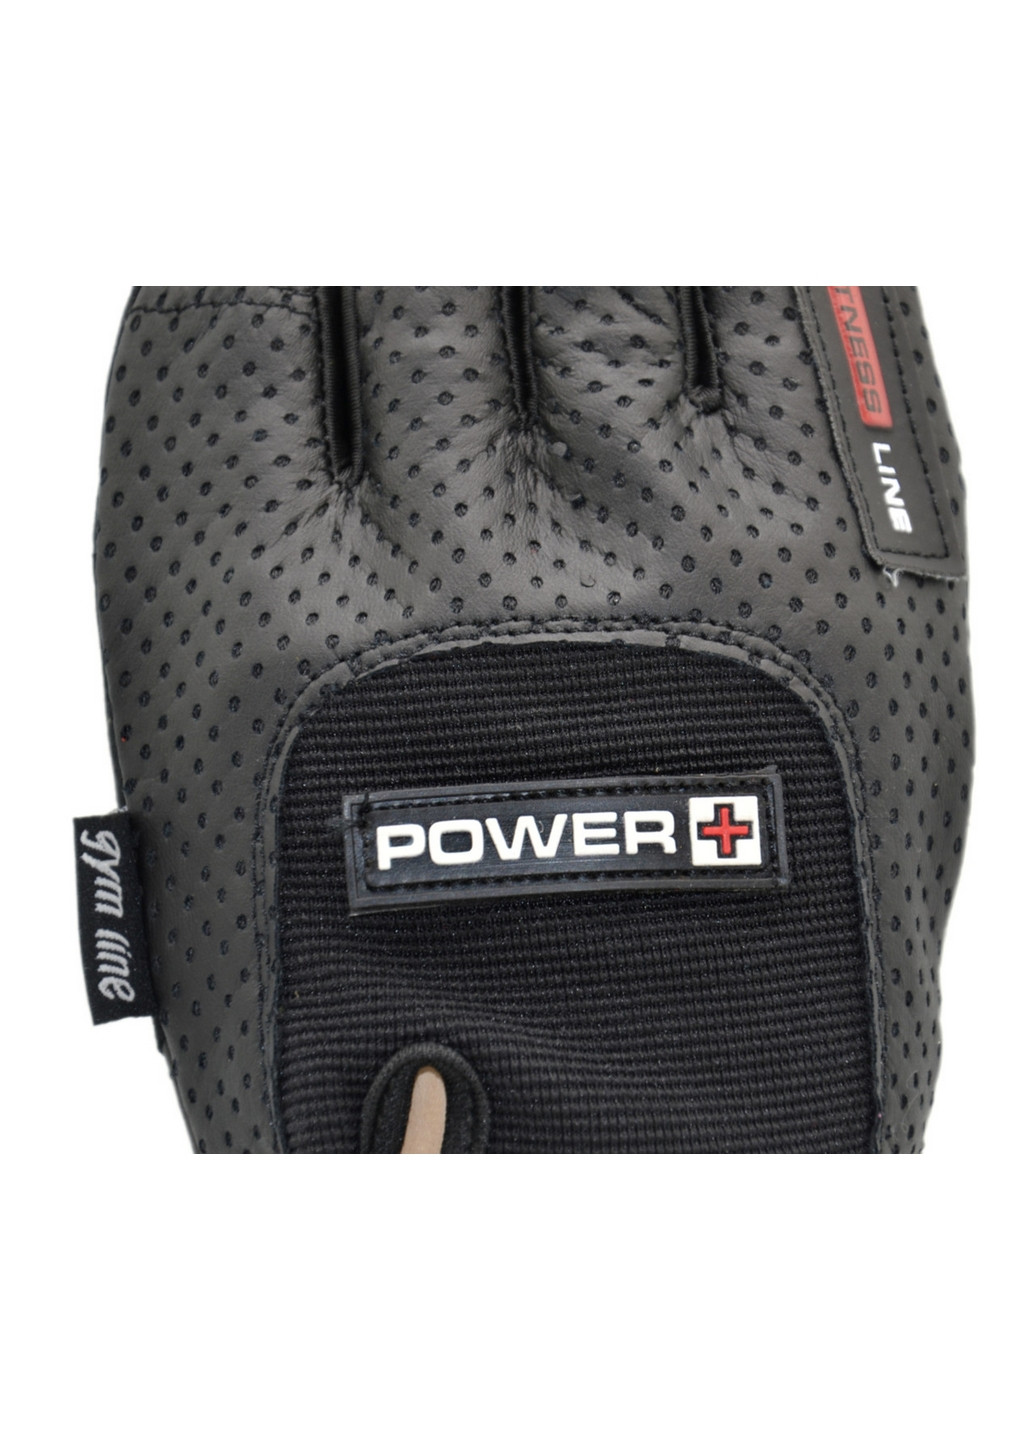 Перчатки для фитнеса Power Plus M Power System (263425464)